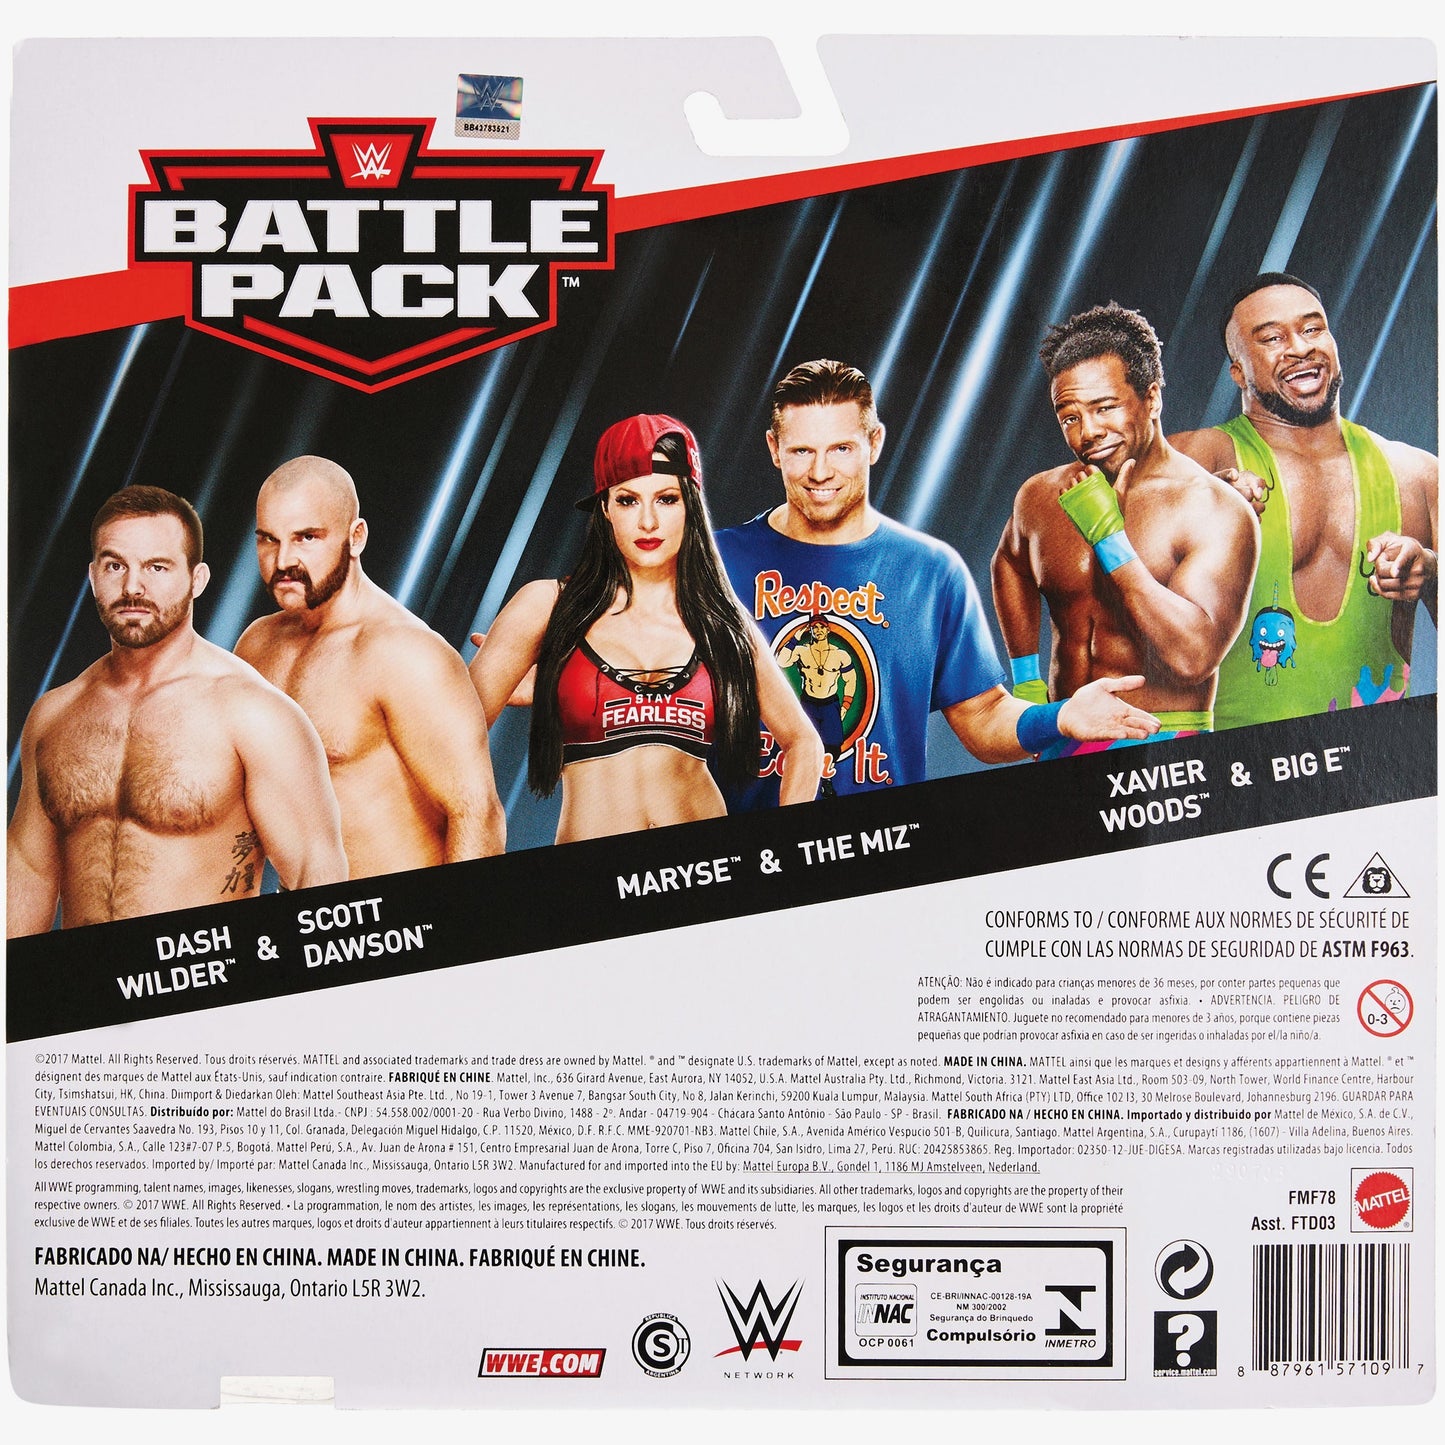 Big E & Xavier Woods - WWE Battle Pack Series #51